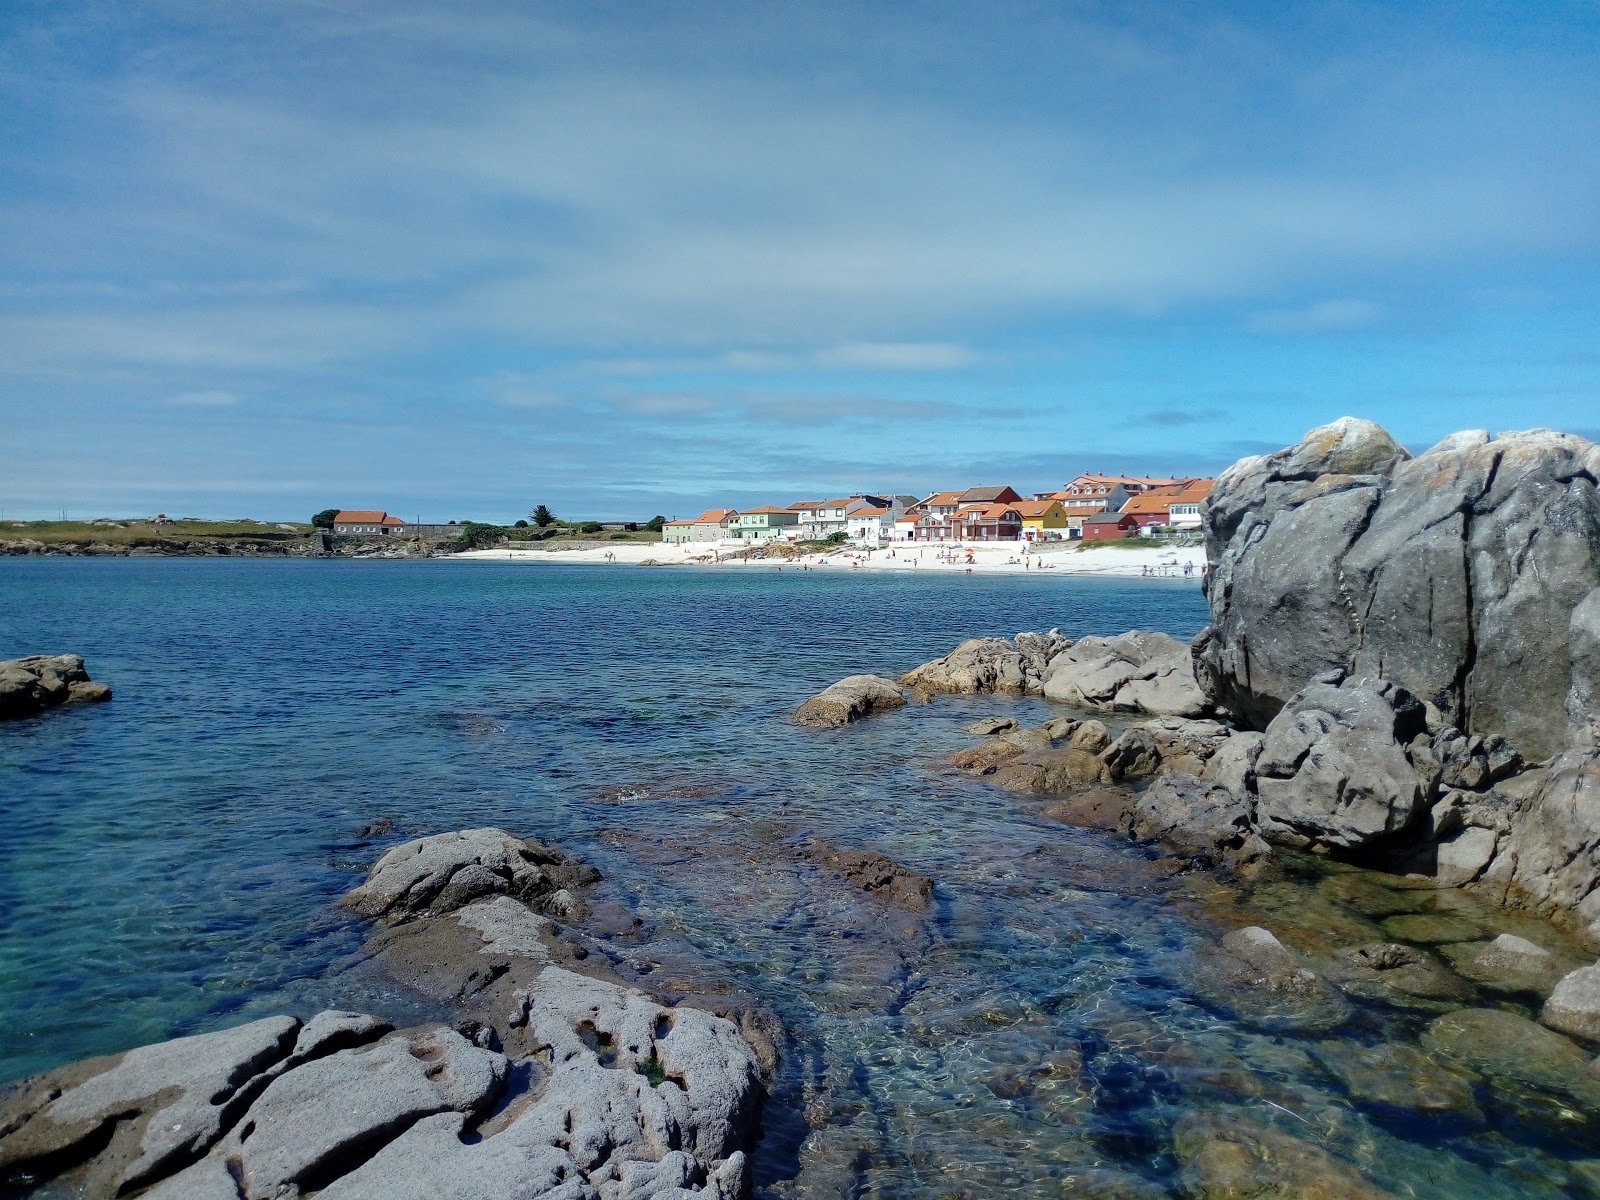 Fotografie cu Prado beach - locul popular printre cunoscătorii de relaxare